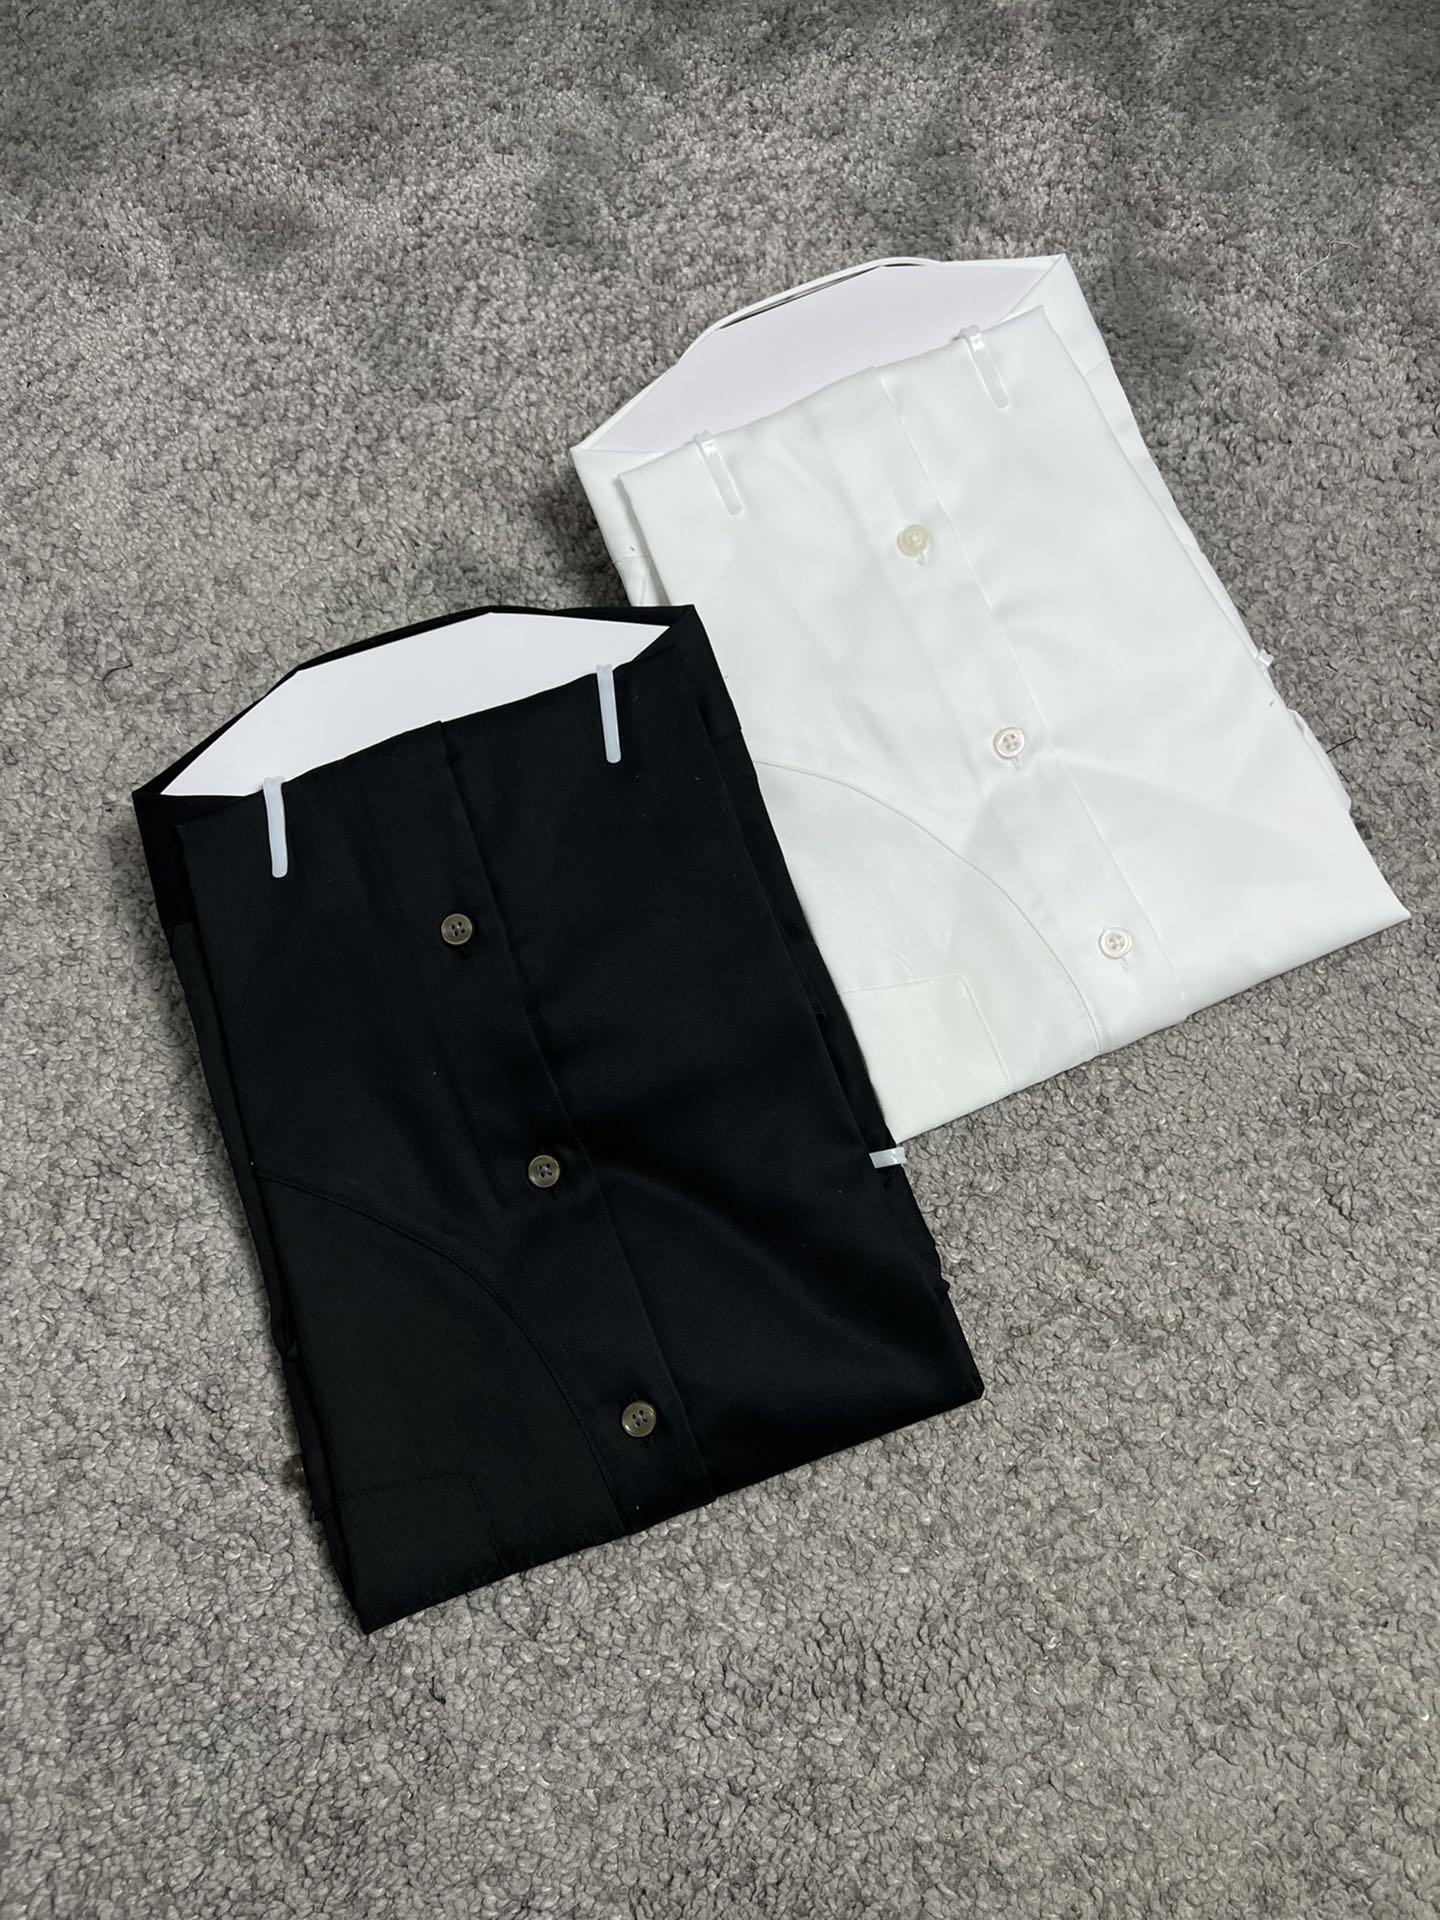 CD迪家24SS春夏新款短袖衬衫拼接设计高端系列黑色白色S,M,L,XL,XXL